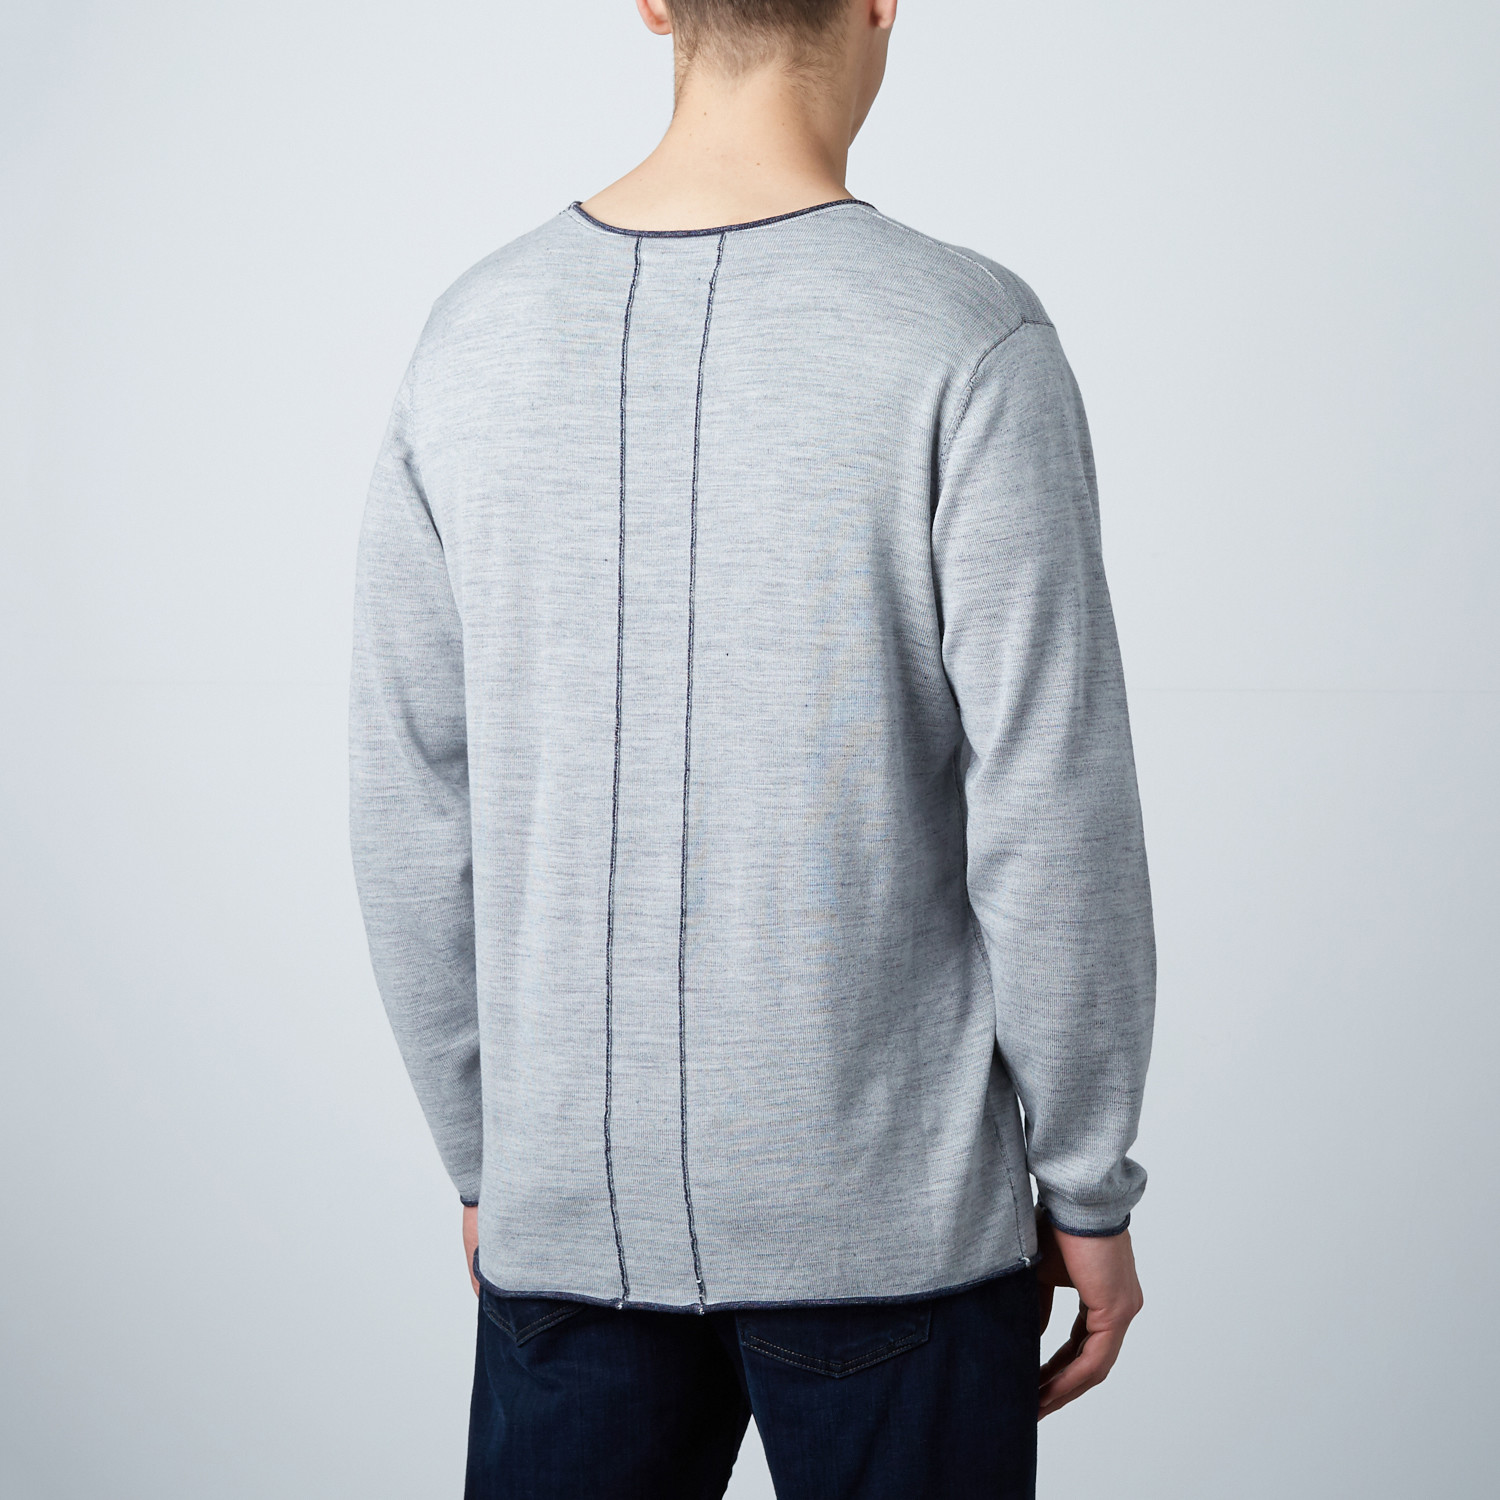 Loft 604 // Wool Reversible Sweater // Navy Melange (S) - Loft 604 ...